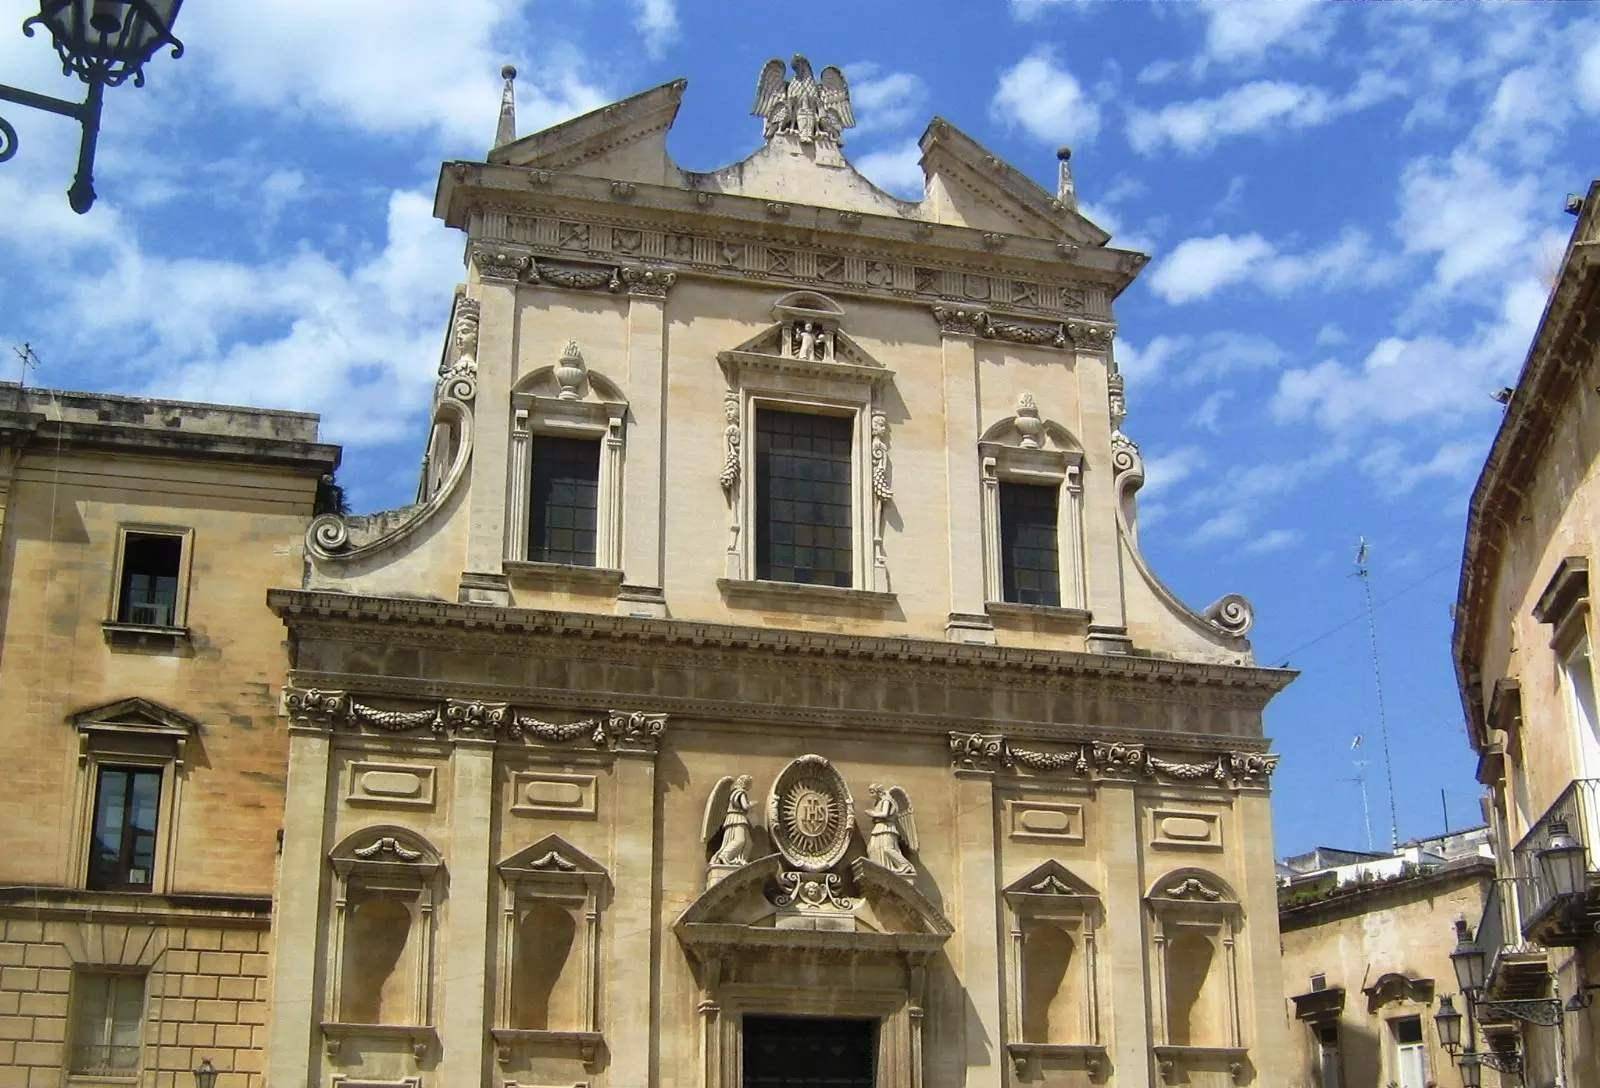 原创神圣罗马帝国时期天主教领地邦国和帝国城市的教堂建筑